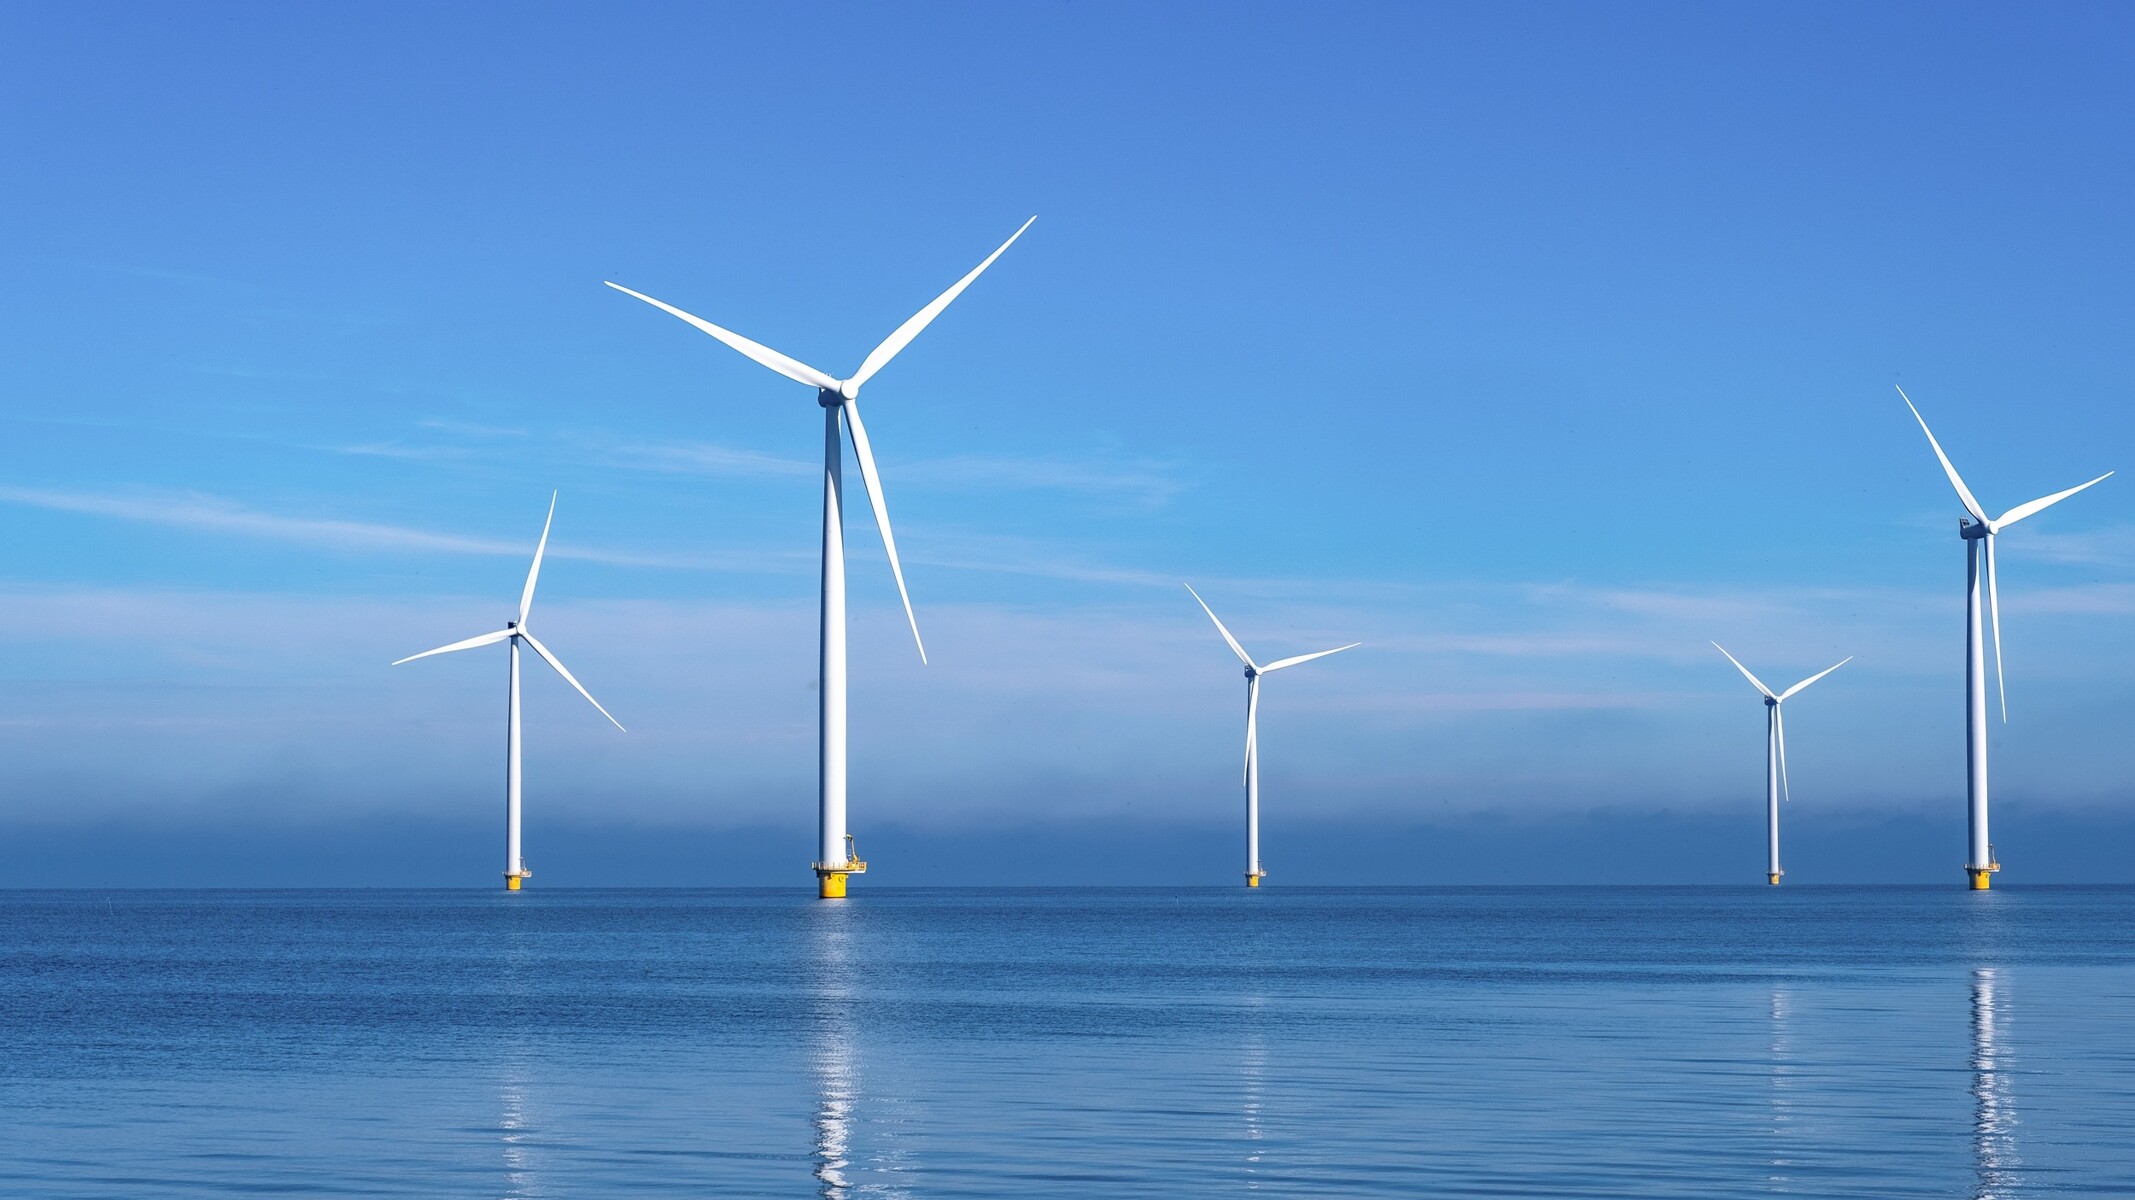 Wind turbines rotating at sea